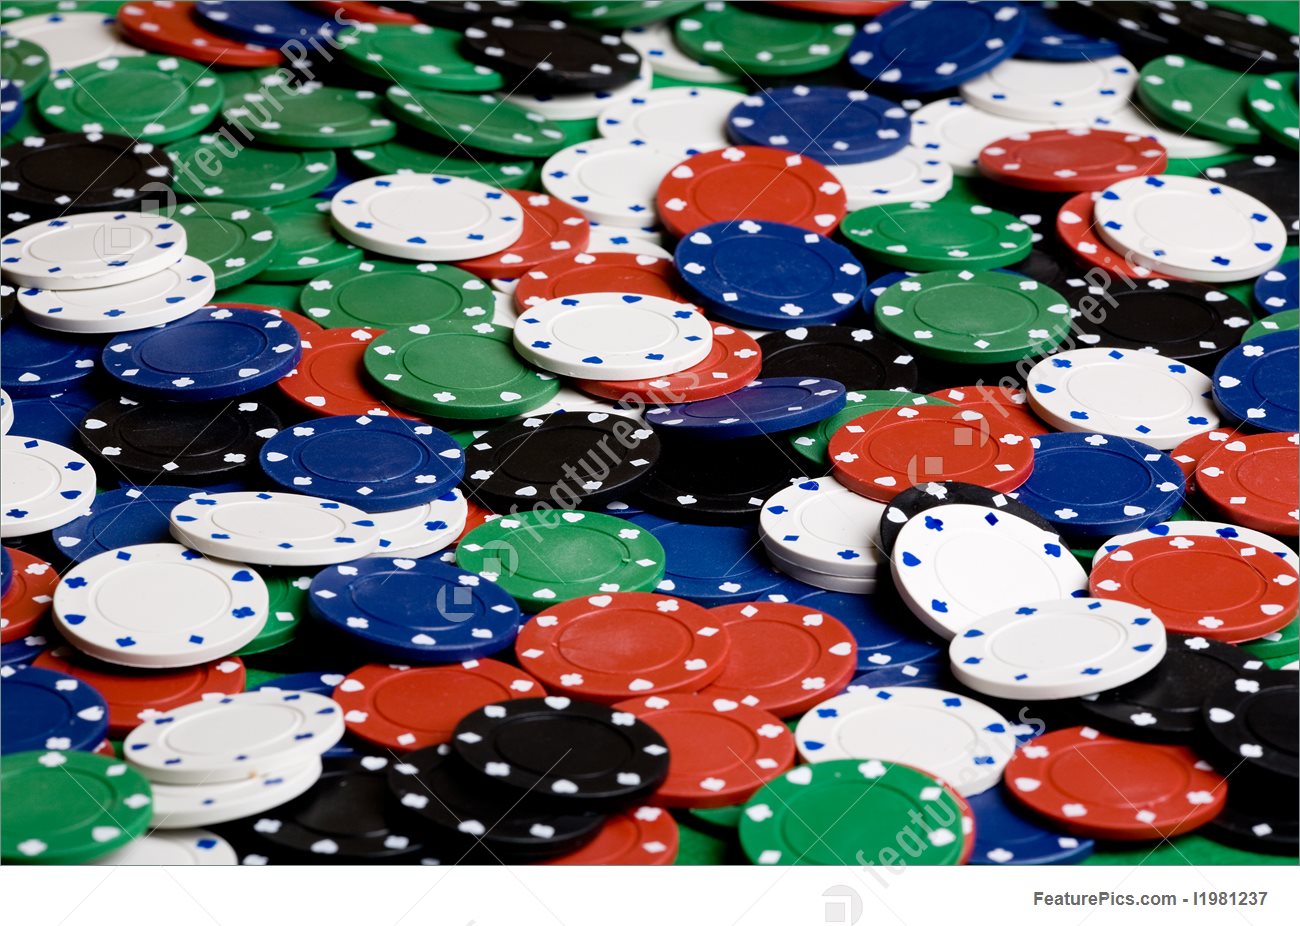 Tiffany blue poker chip set